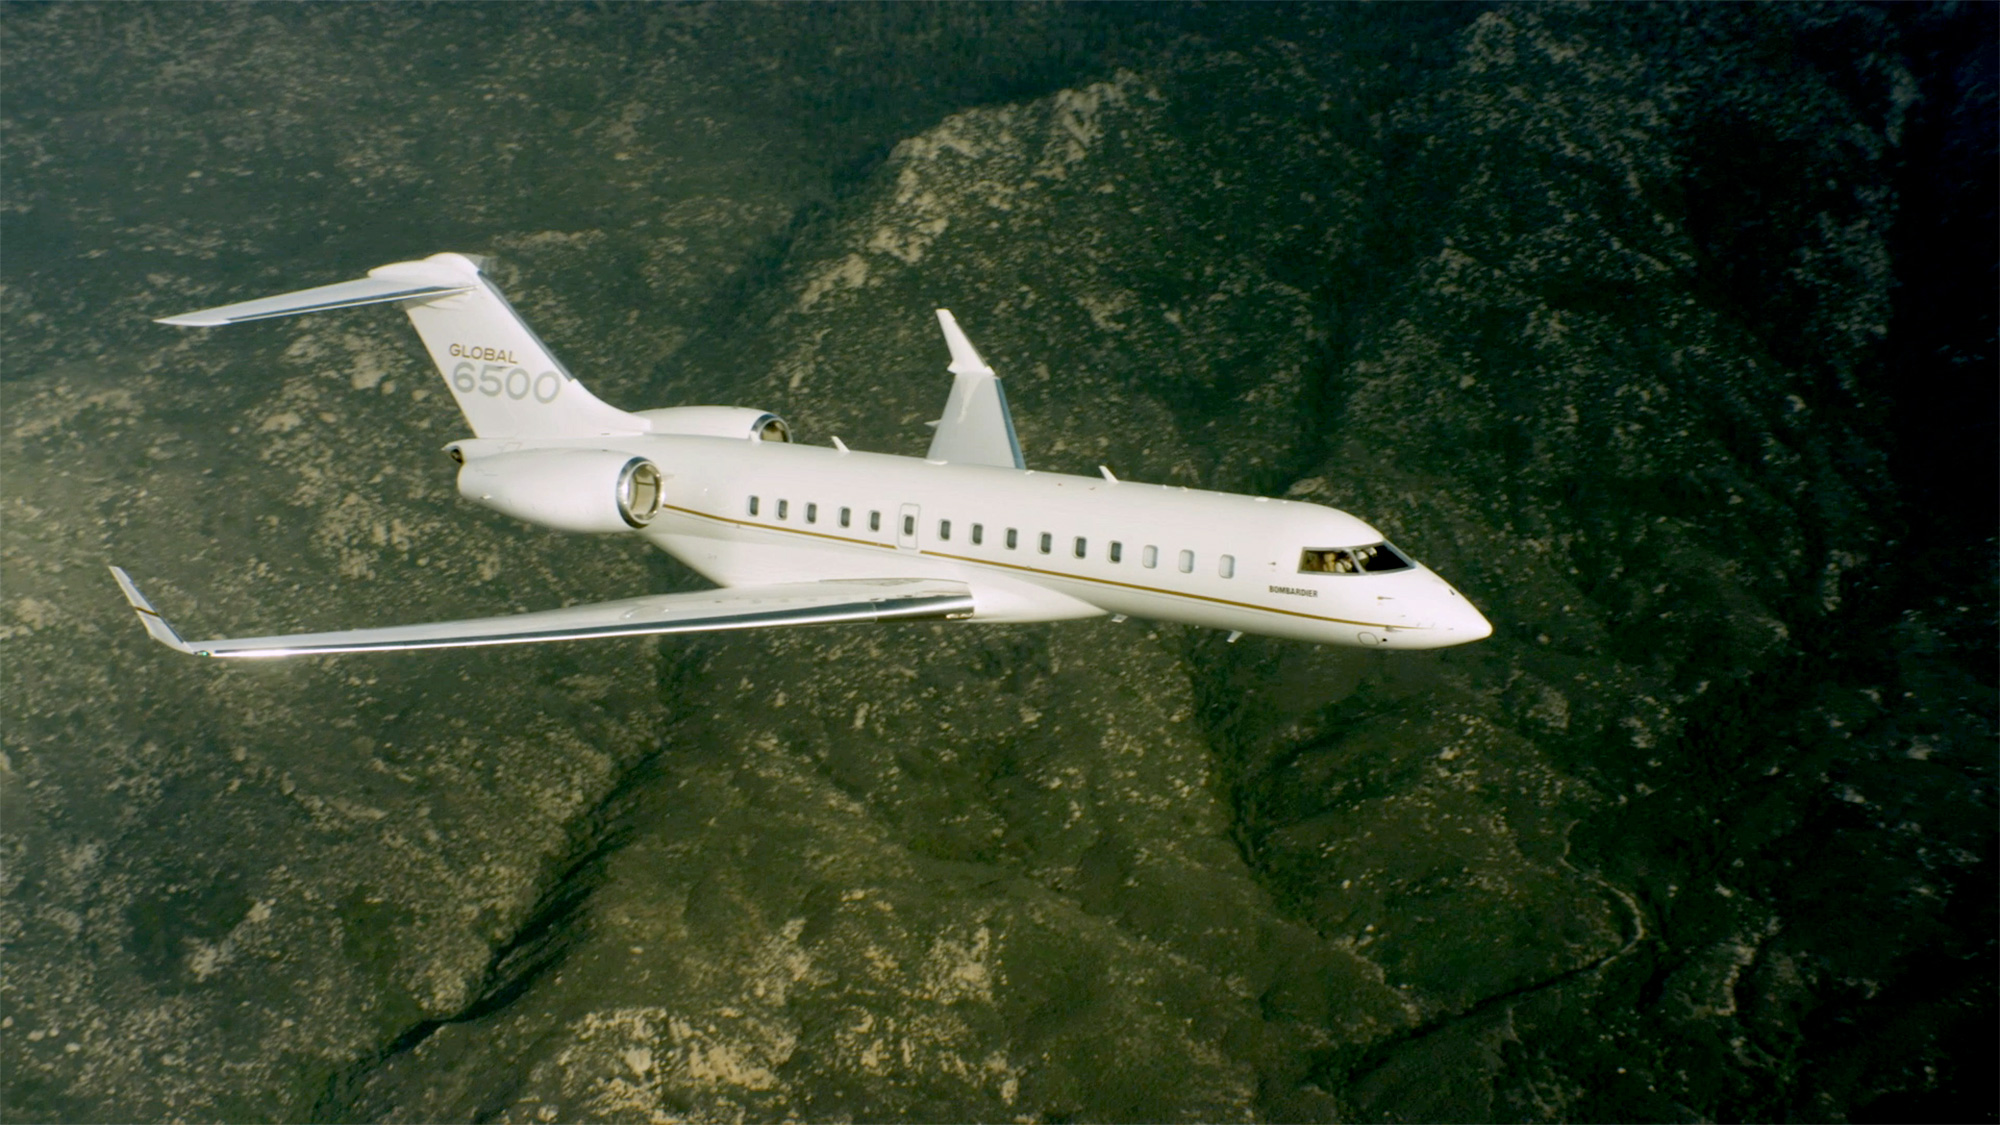 Global 6500 flying